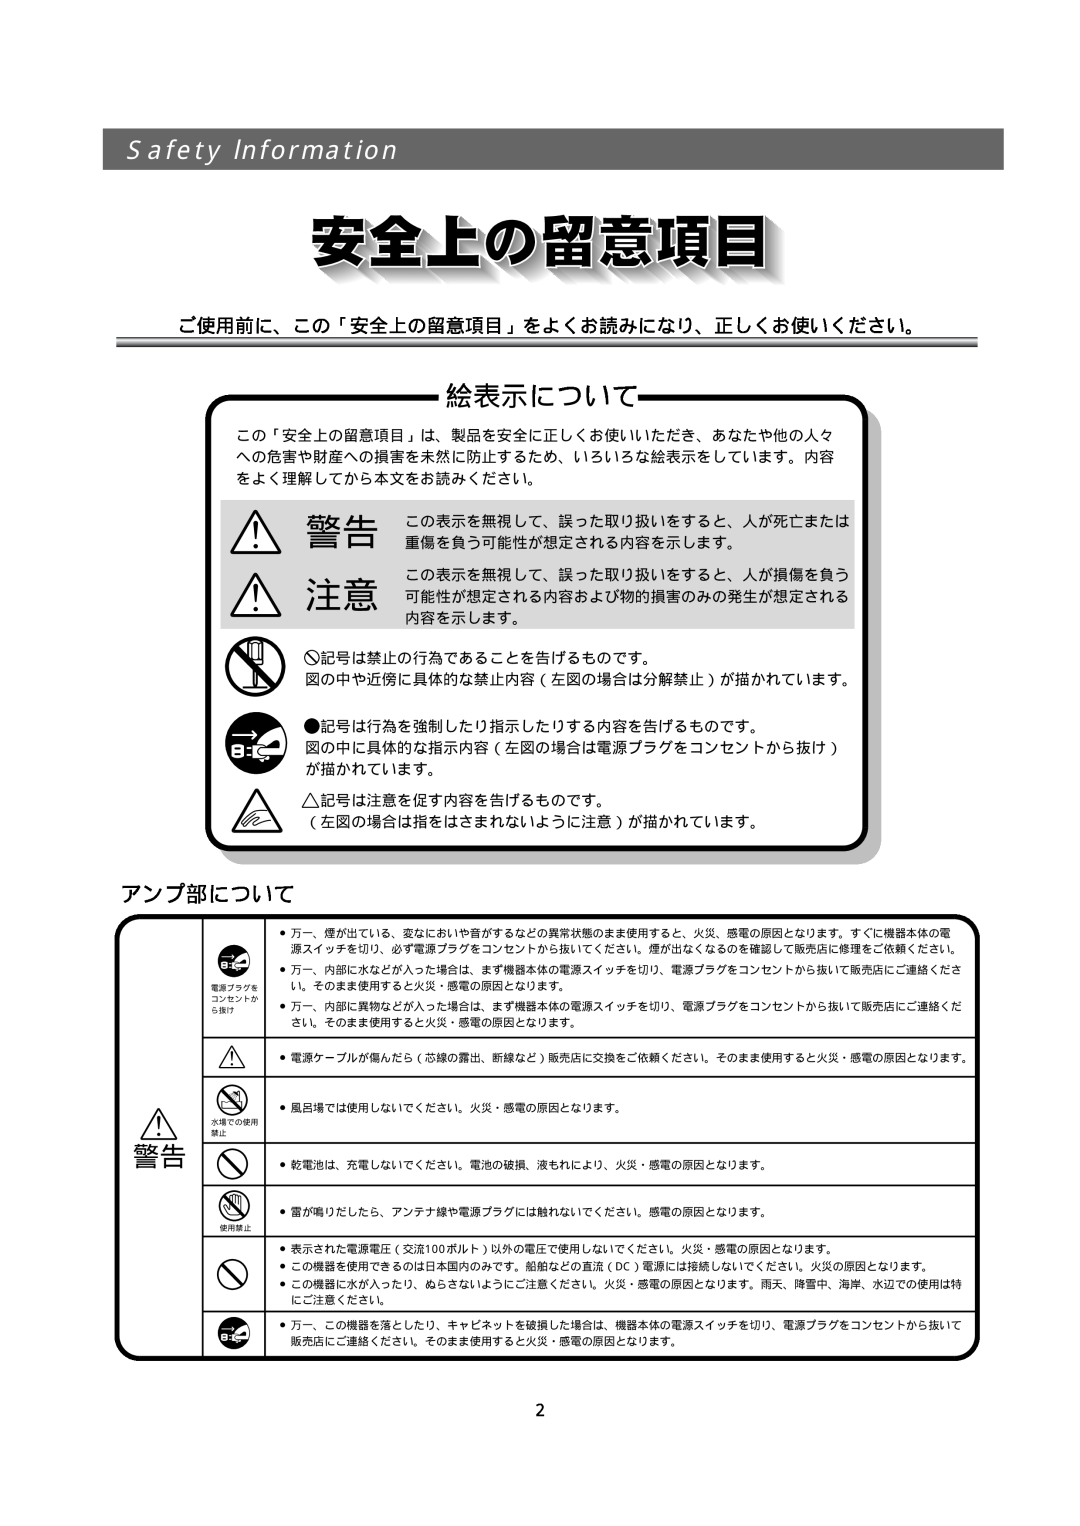 Bose 321GS owner manual 絵表示について, Safety lnformation, 警告 注意, ご使用前に、この「安全上の留意項目」をよくお読みになり、正しくお使いください。 